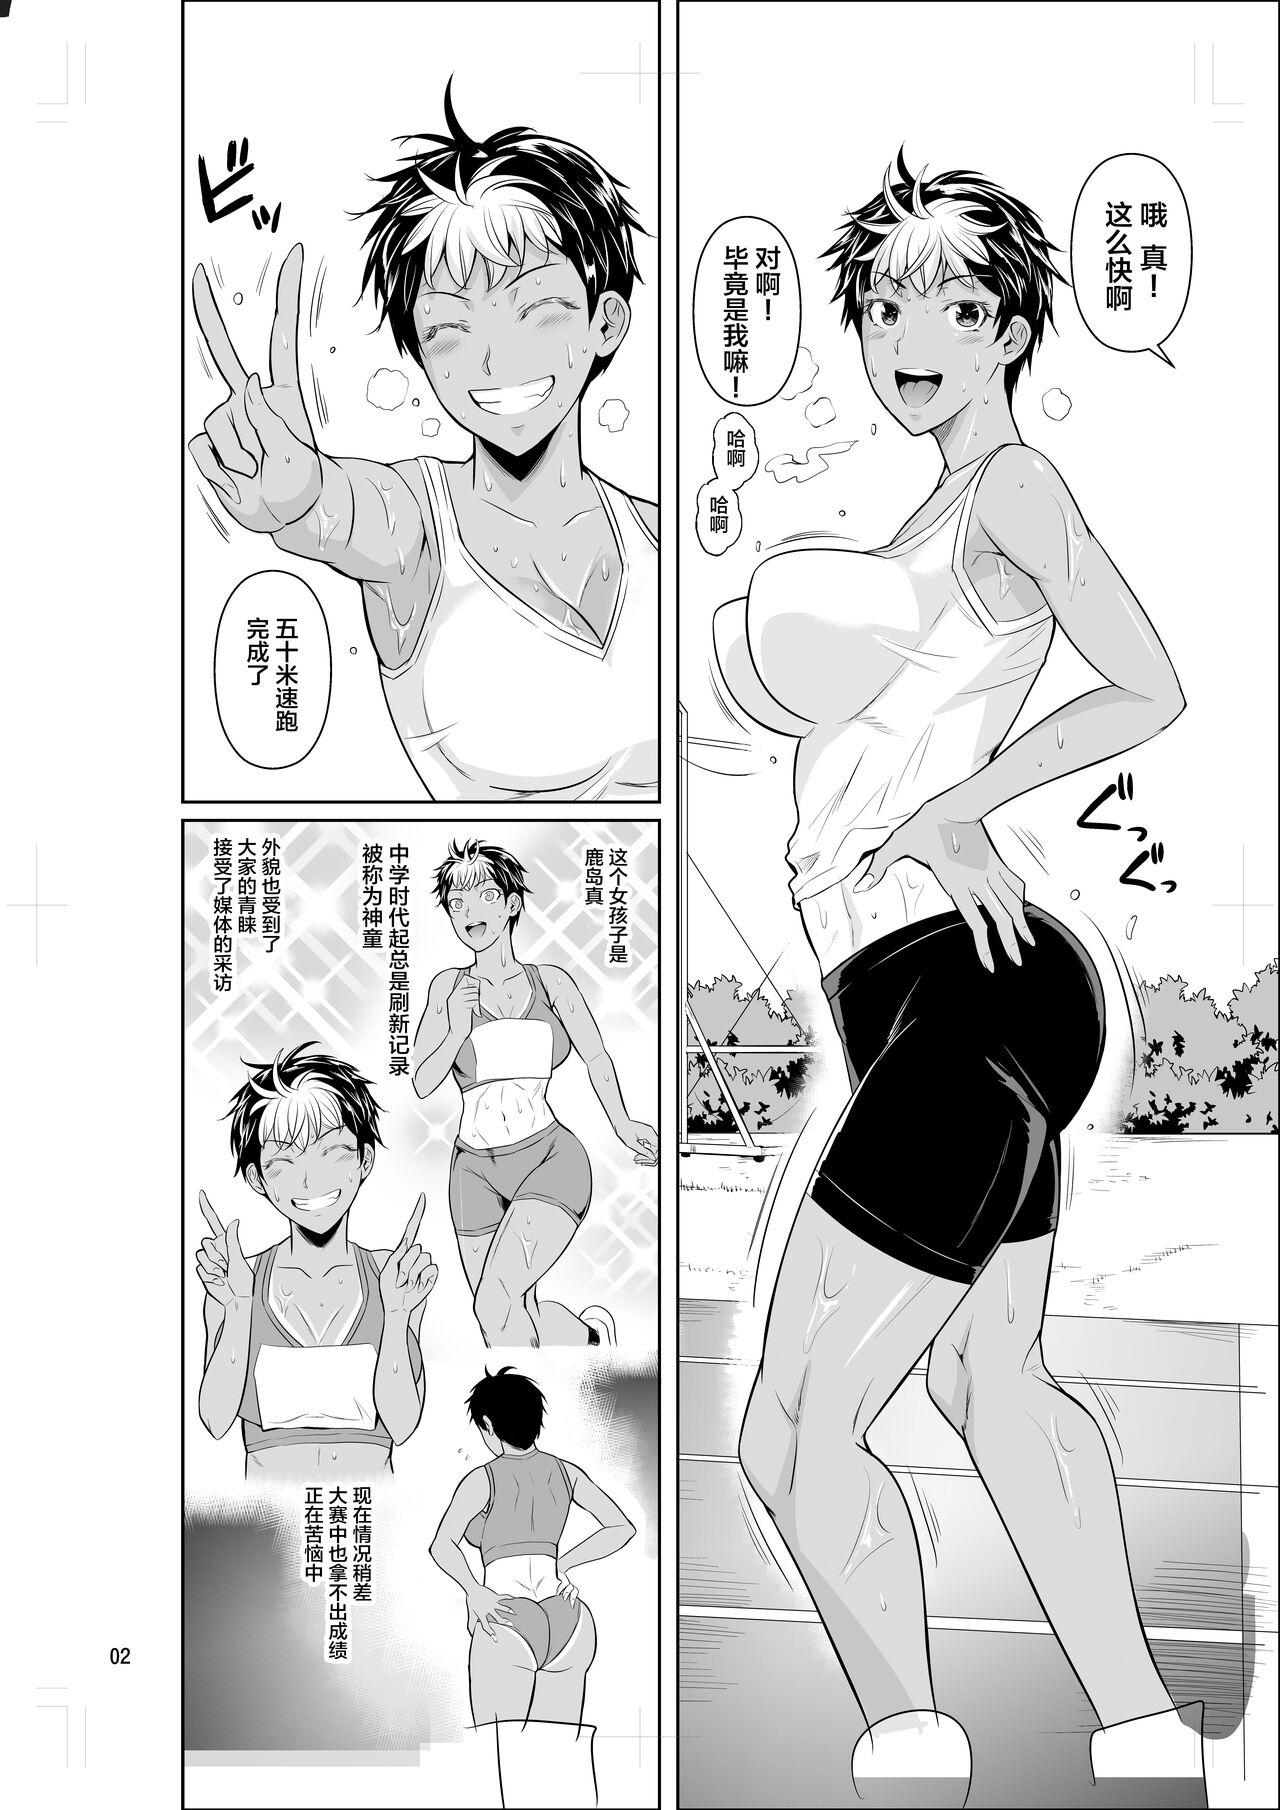 Pantyhose Asex Training dakara Mondainai desu - Original Reverse - Page 3